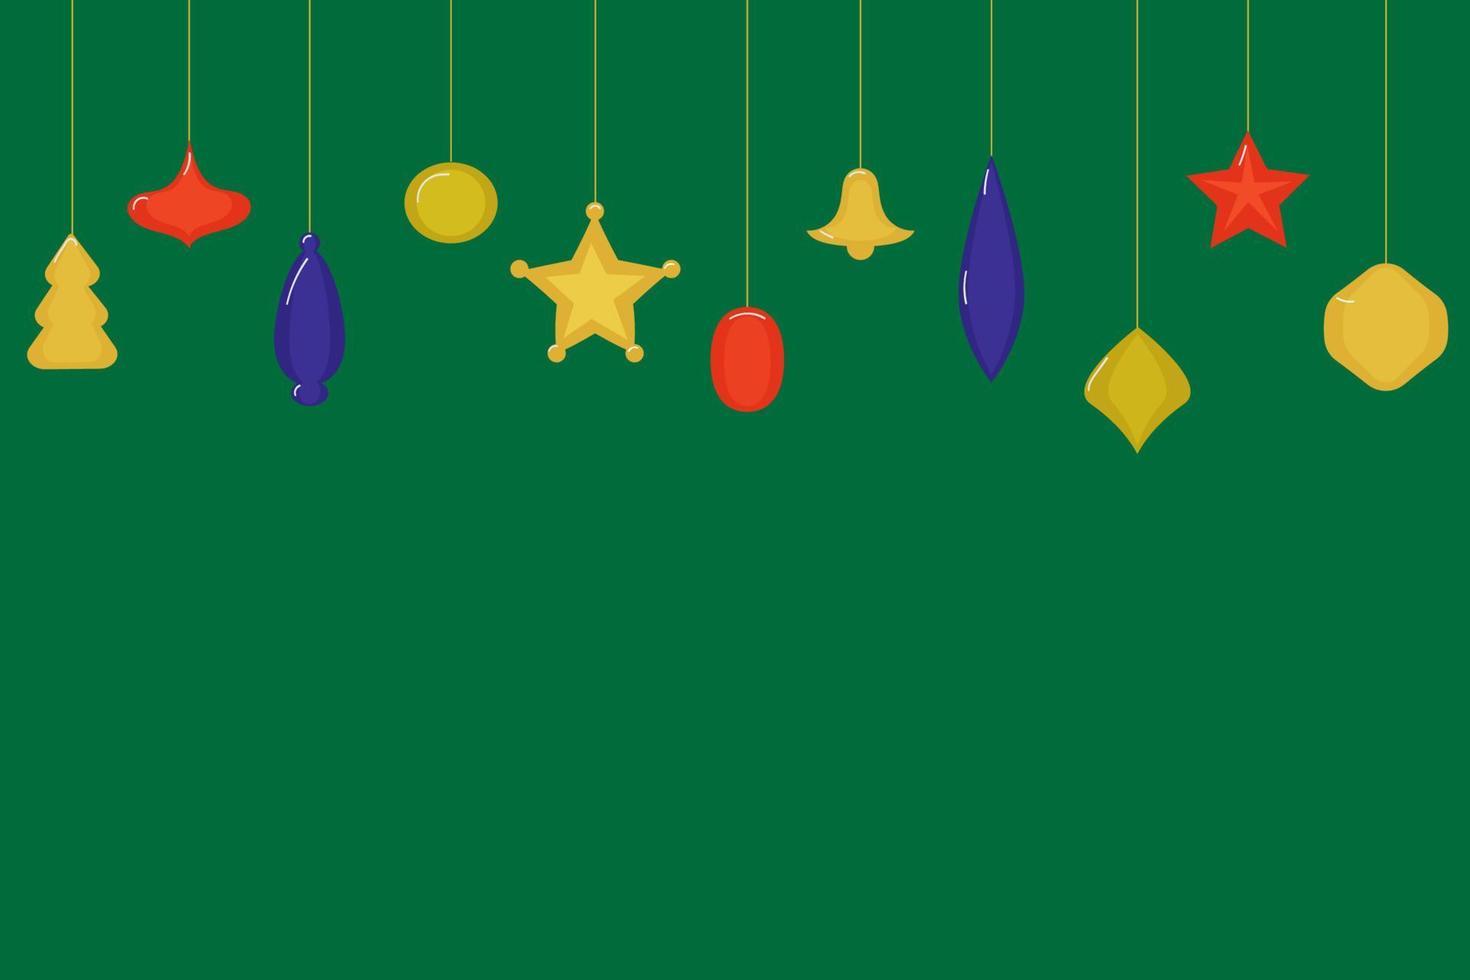 décorations de noël sous forme de boules, arbres de noël, cloche, étoiles de couleurs rouge, bleu et jaune sur fond vert. espace de copie vecteur